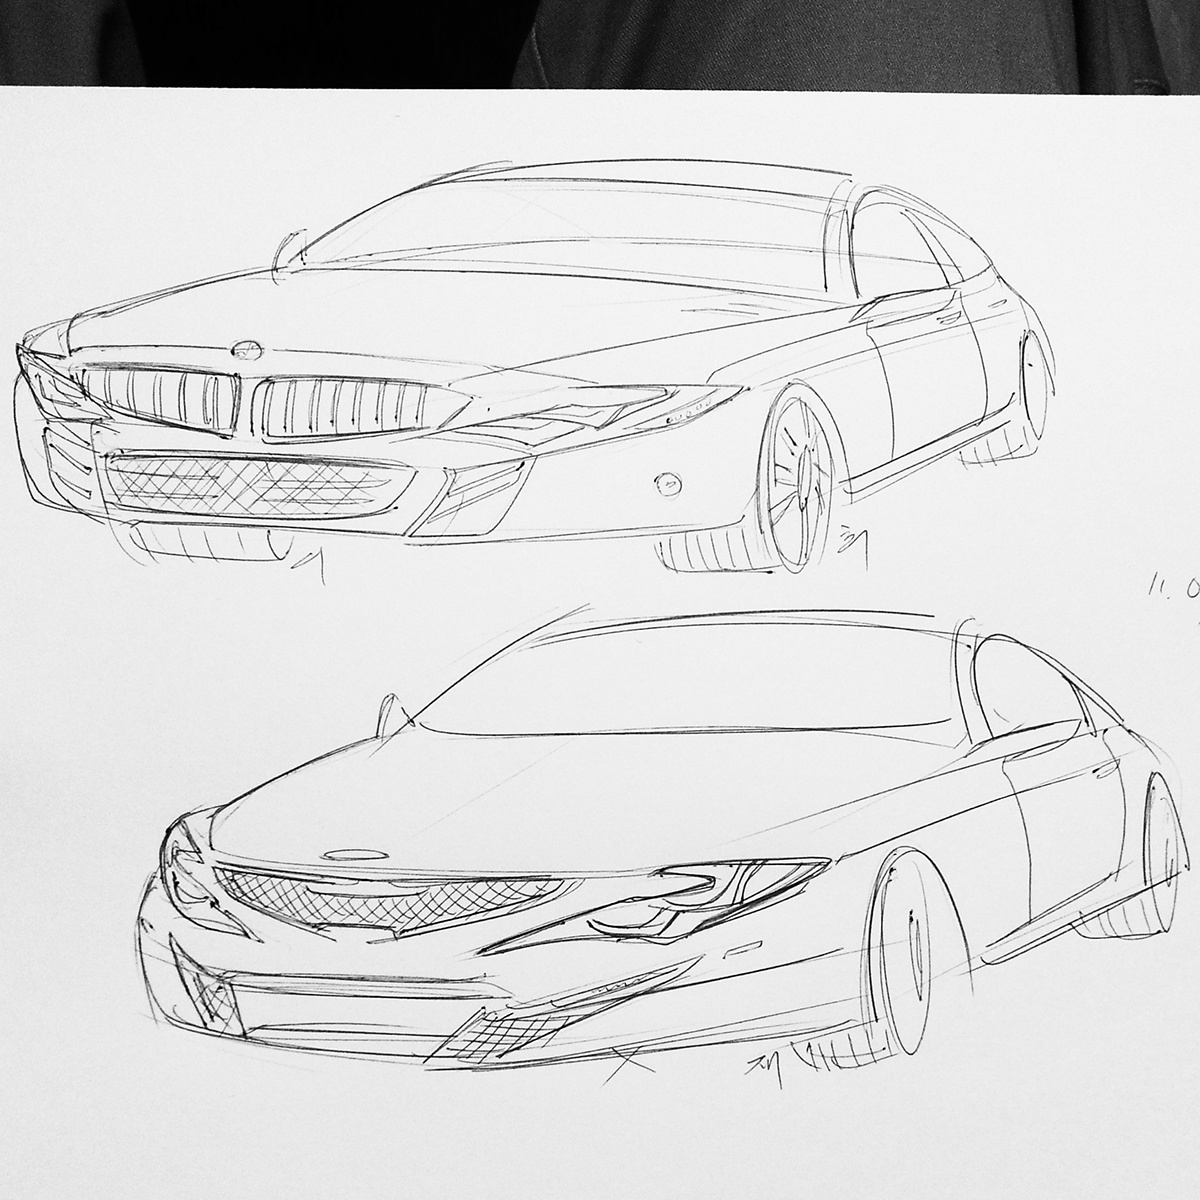 car Auto Topgear lollipop market off sunday draw sketch a4 Powerful Exterio luxury kia